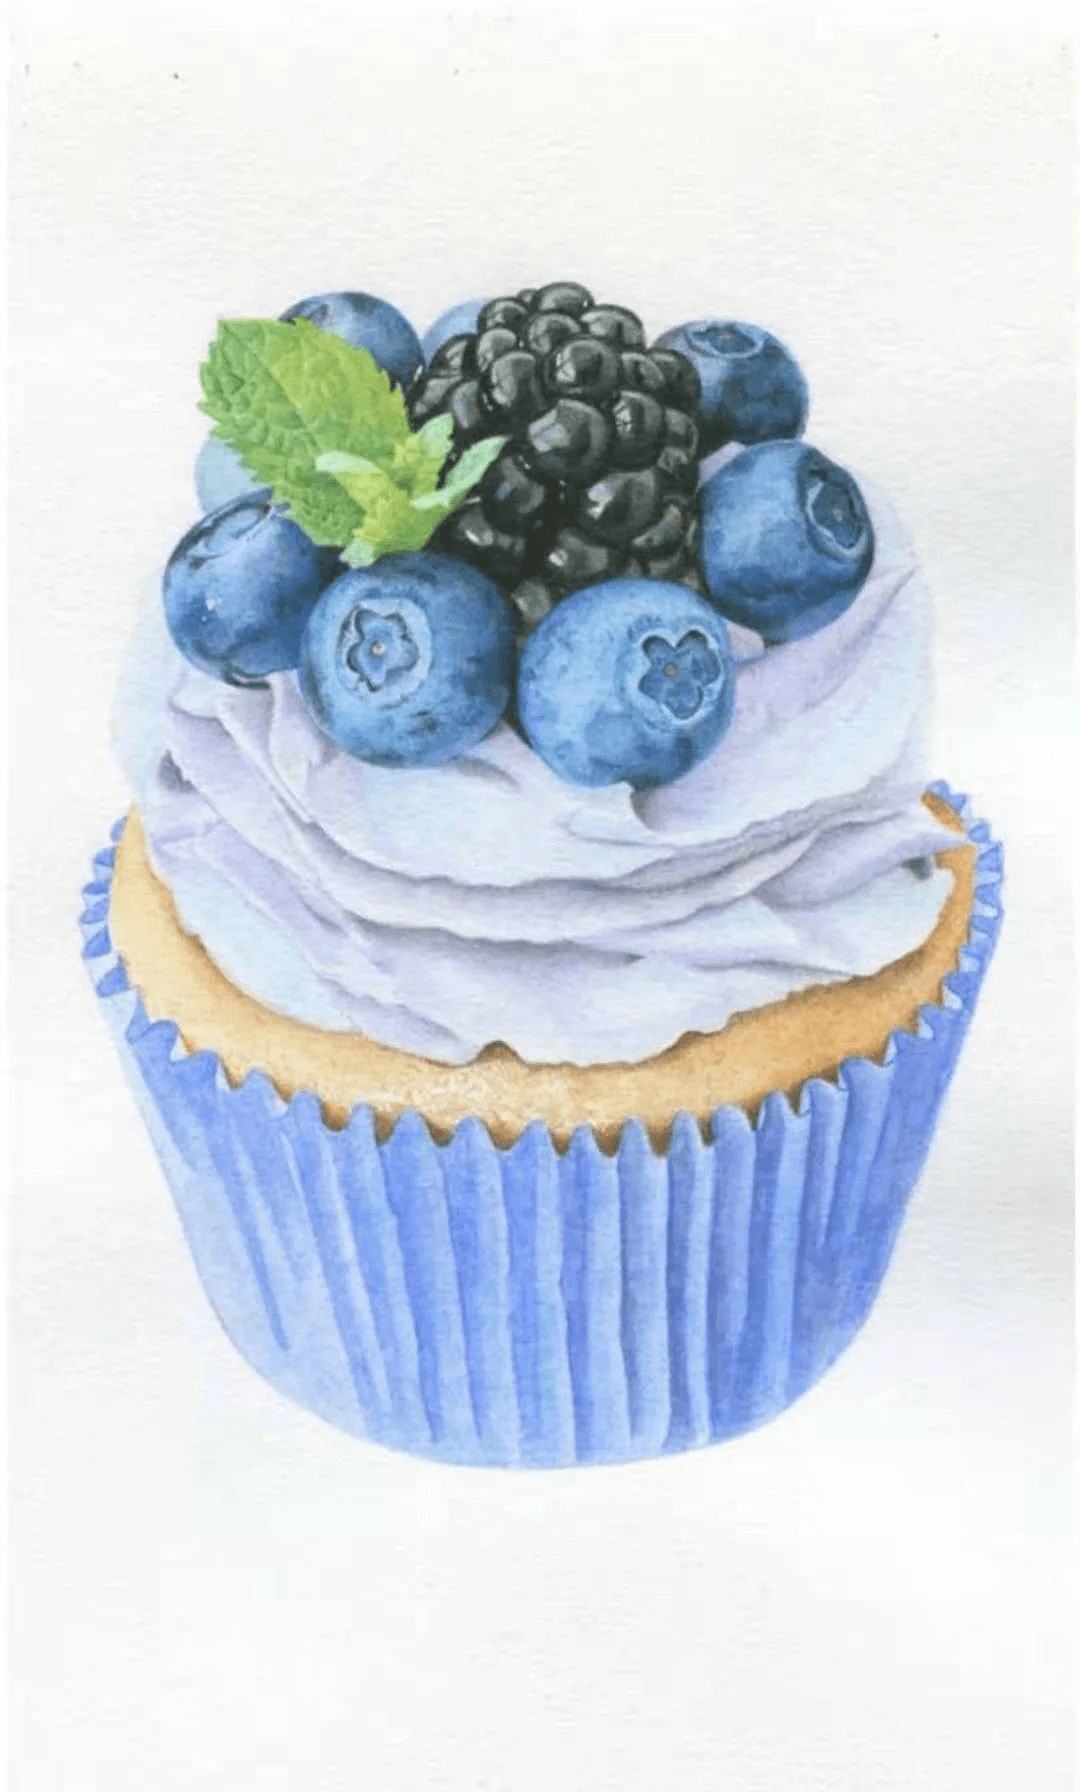 彩铅教程酸酸甜甜的蓝莓冰淇淋美味